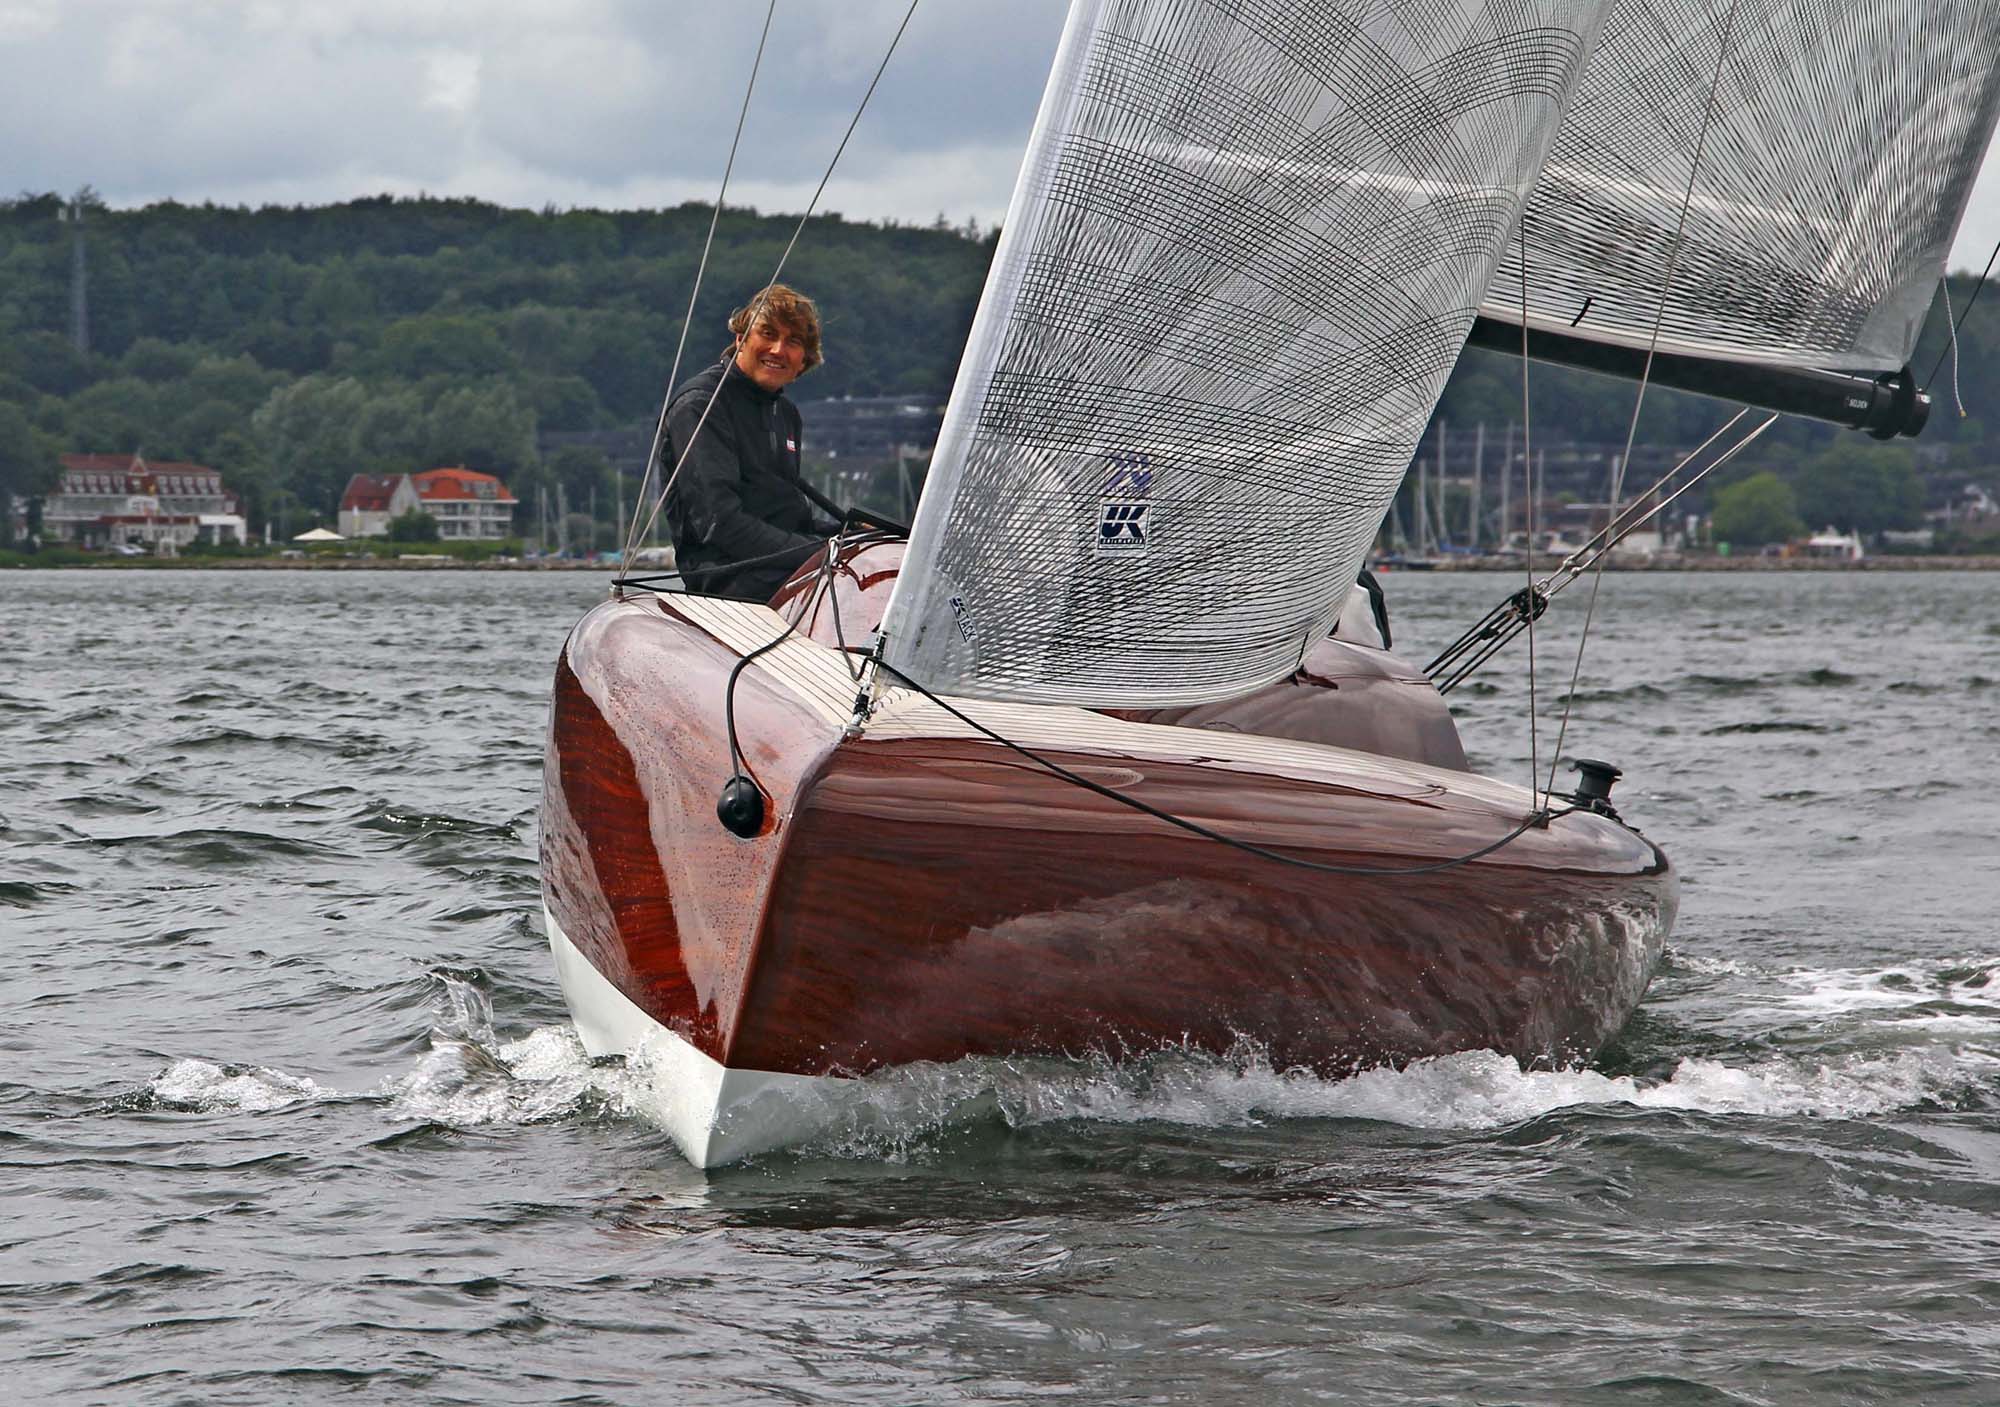 Einfach gutes Segel und ein schönes Boot. Dirk Manno segelt erfolgreich mit X-Drive® Segeln.